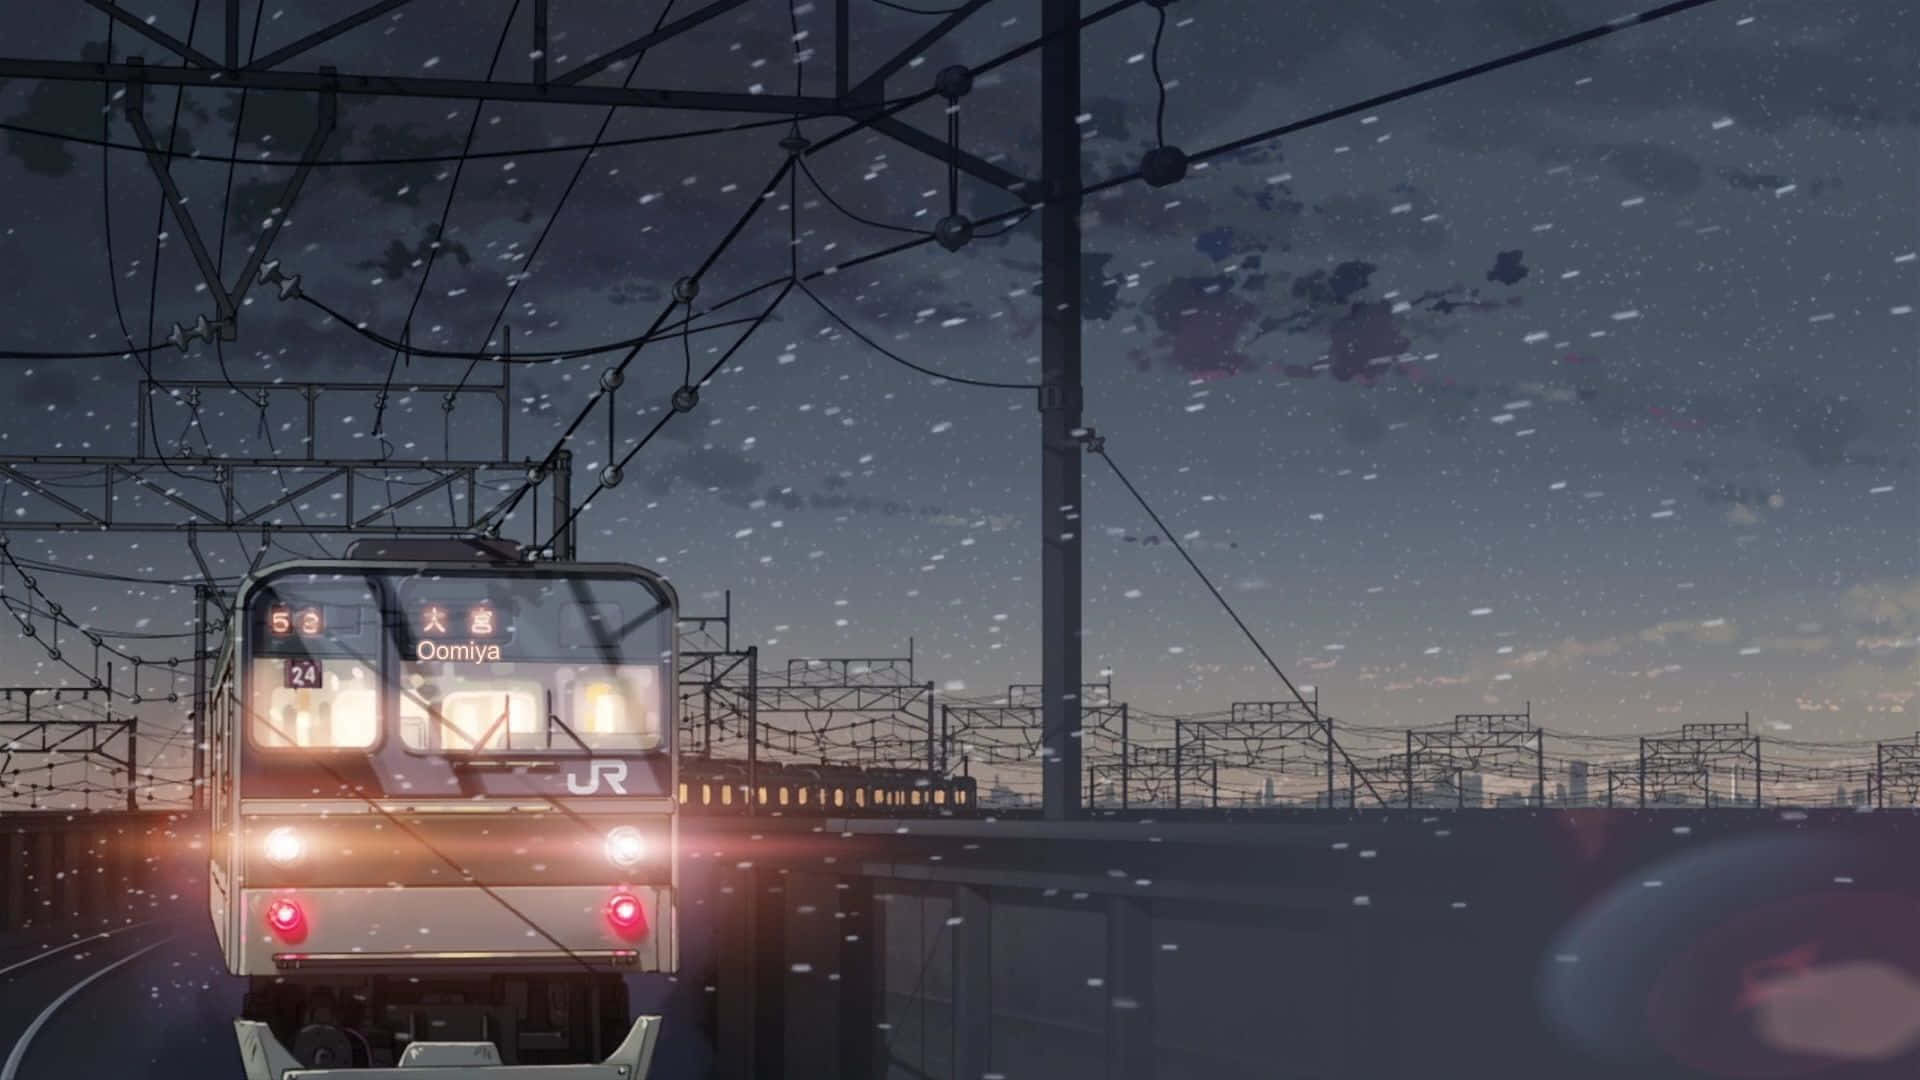 Fondods De Makoto Shinkai